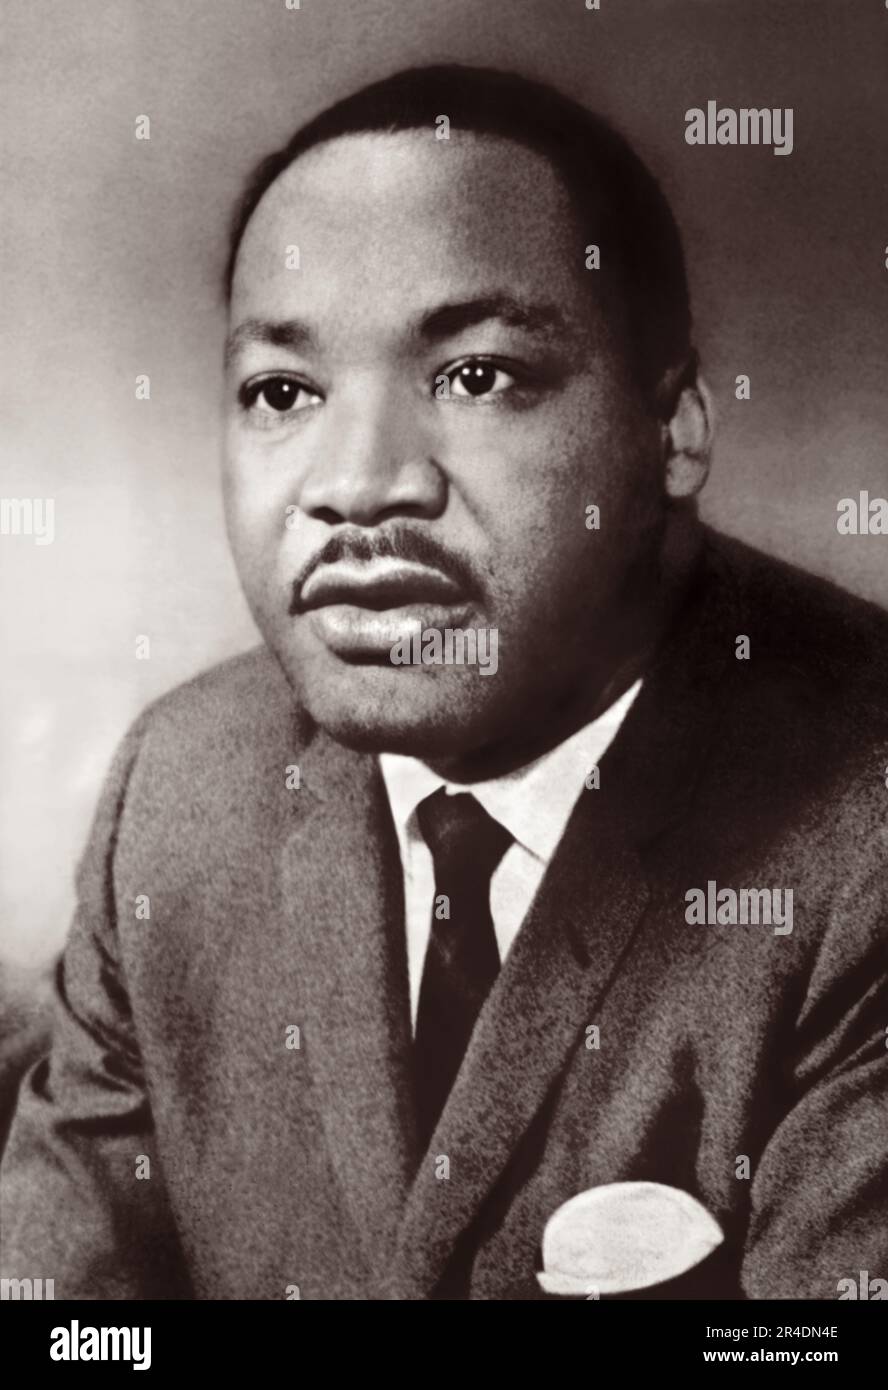 Retrato del líder de los derechos civiles Dr. Martin Luther King, Jr Foto de stock